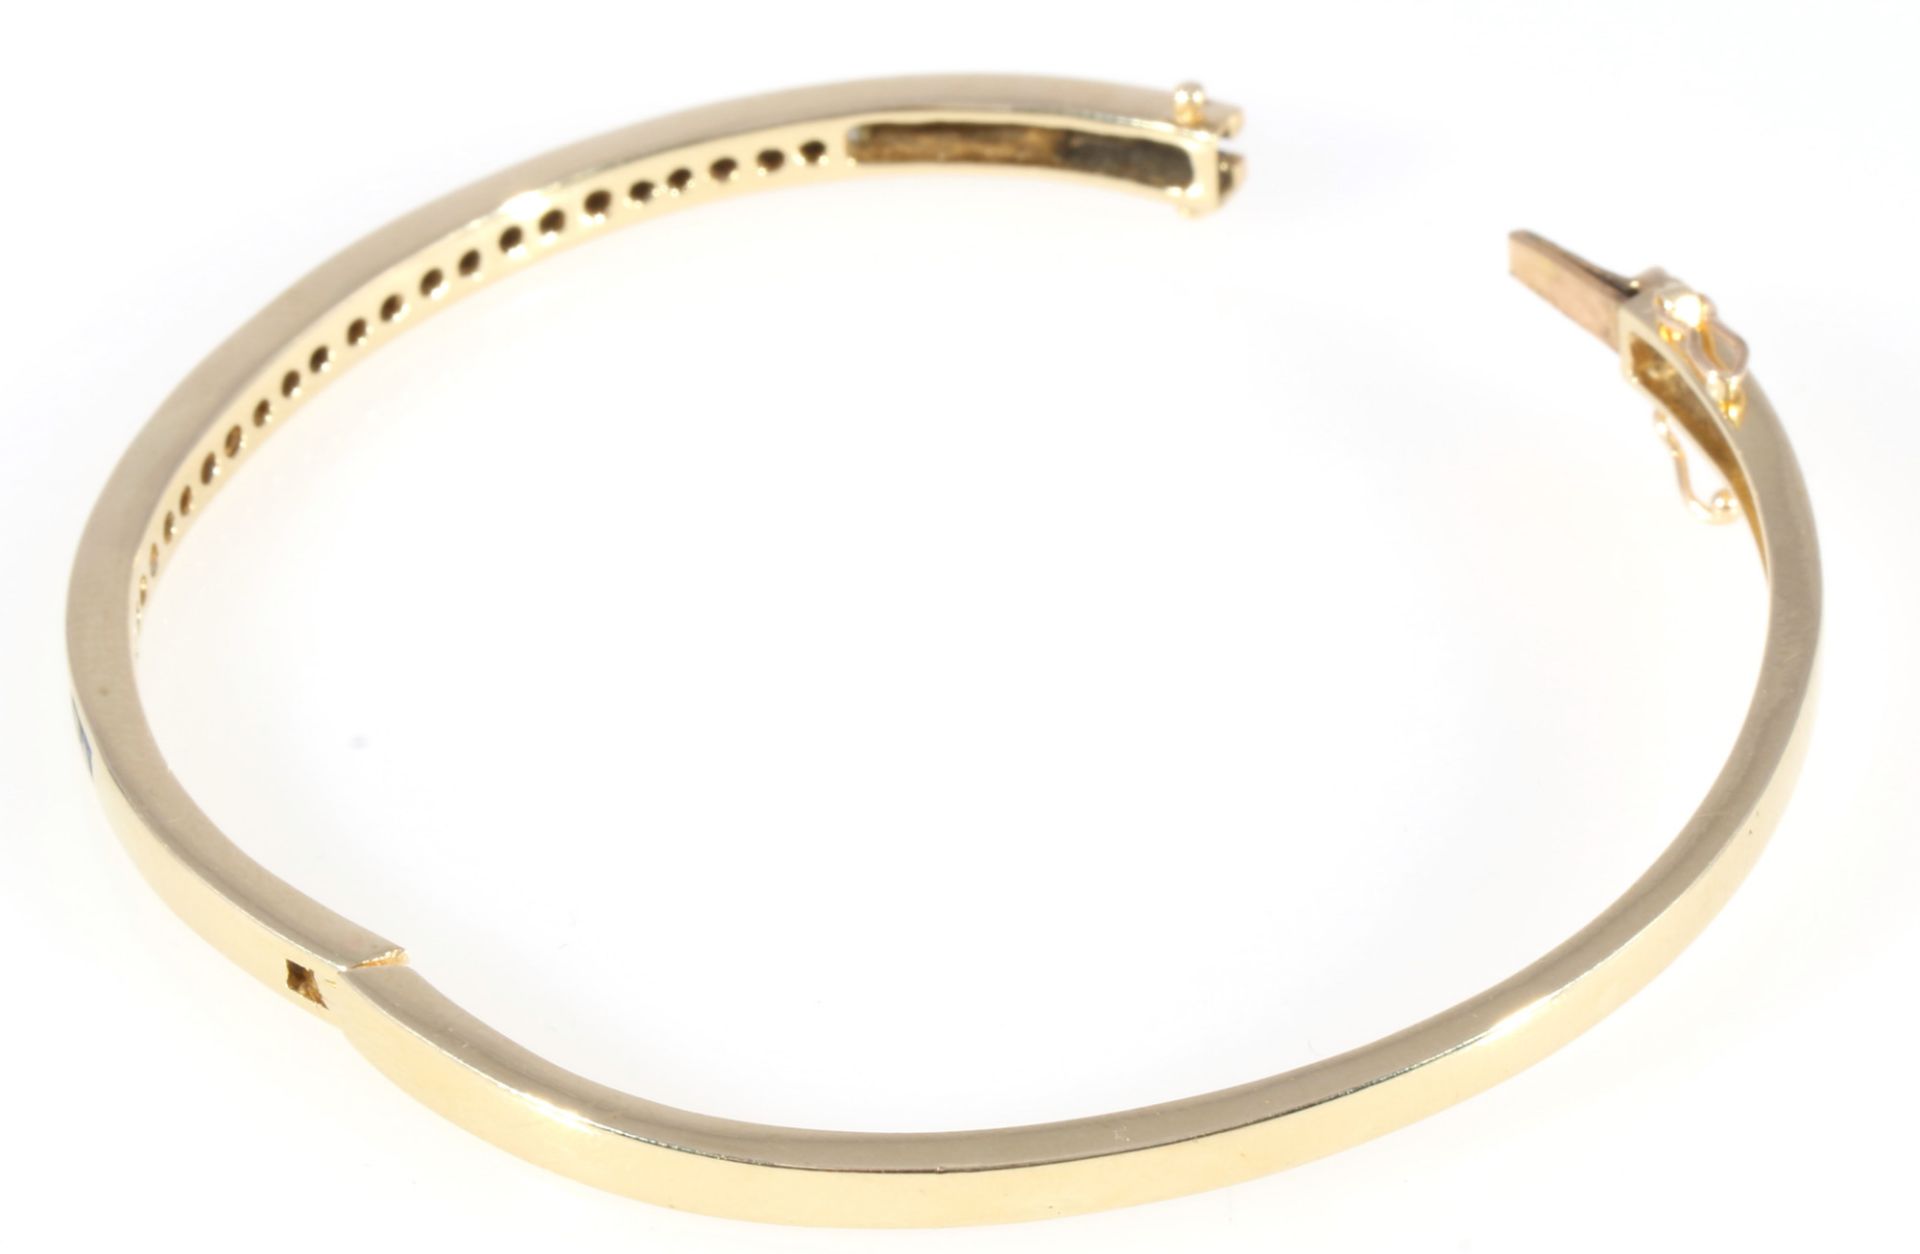 585 gold bracelet with diamonds and sapphires, 14K Gold Armreif mit Brillanten und Saphiren, - Image 3 of 4